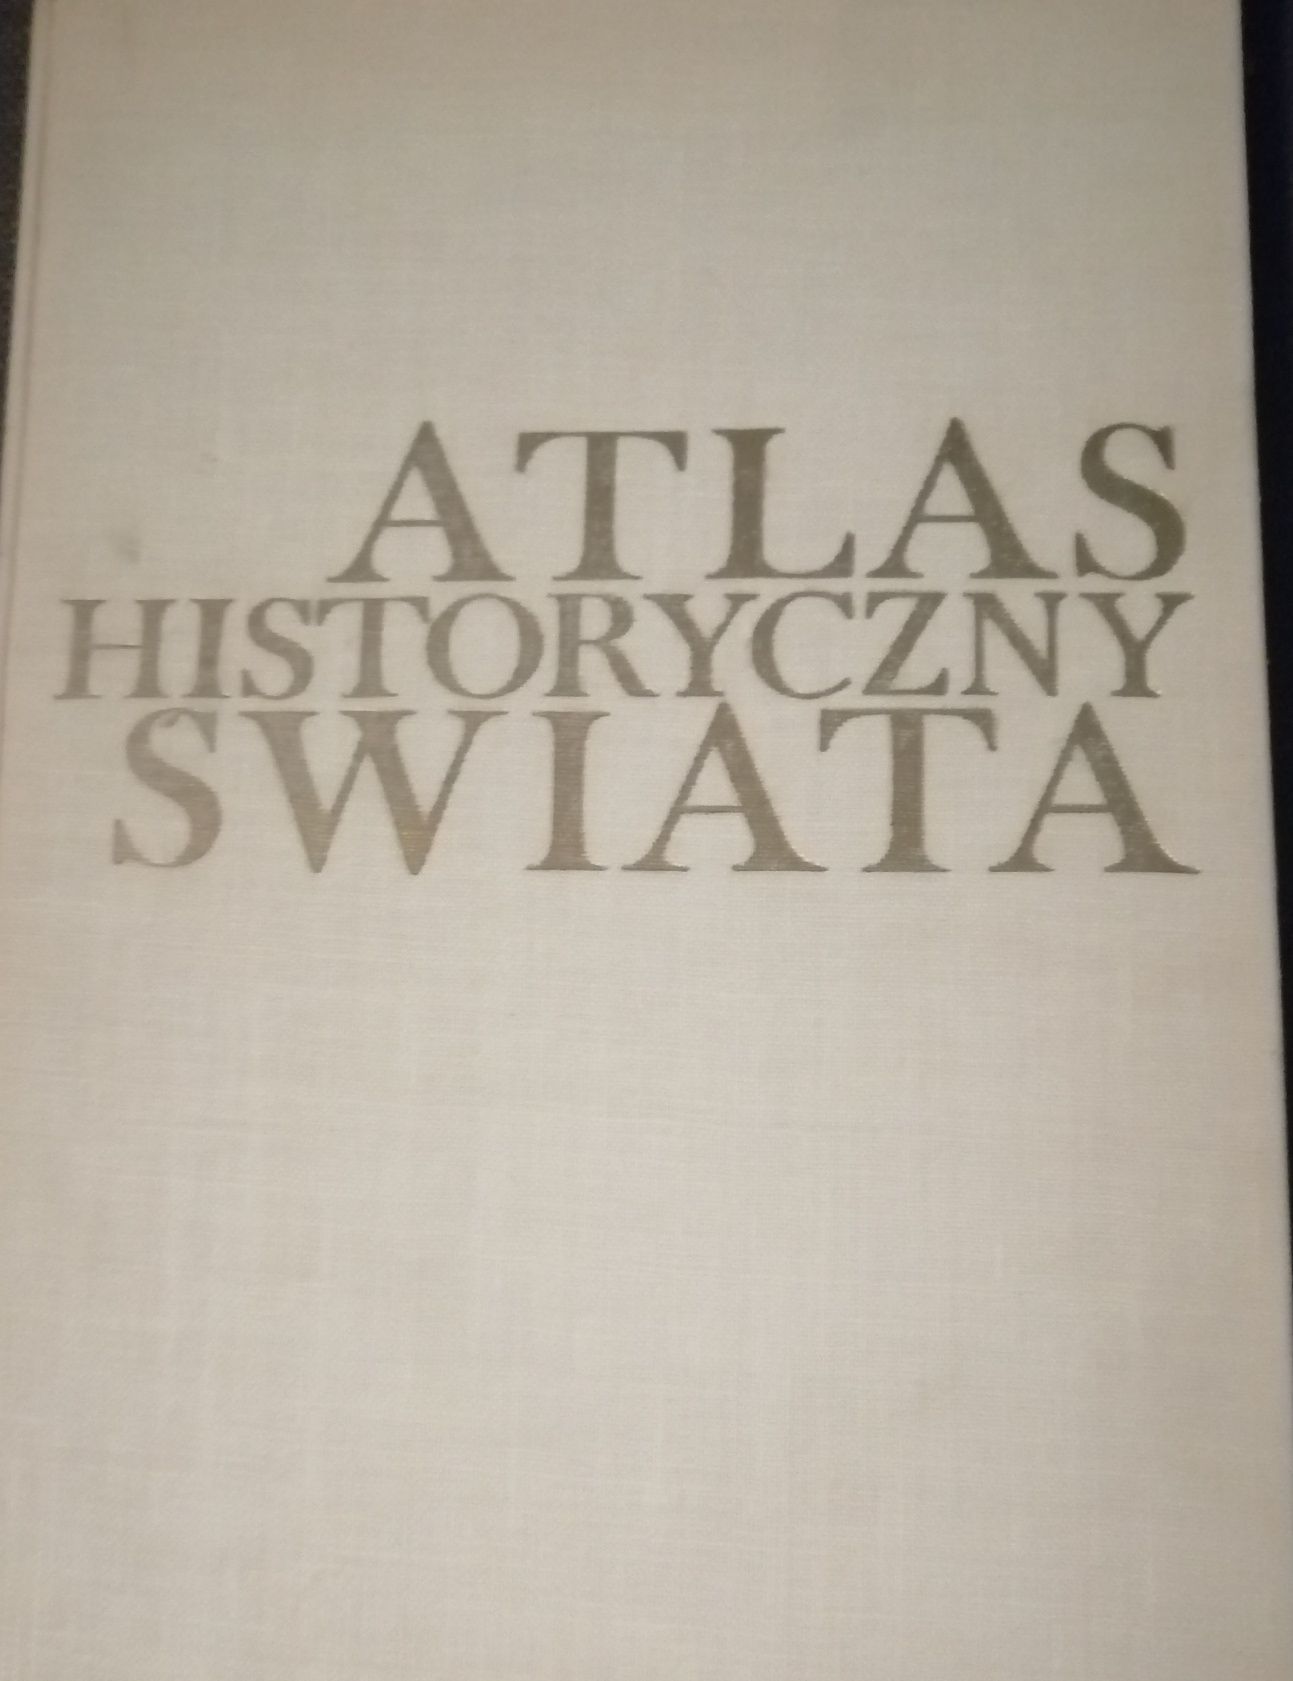 Atlas historyczny świata ppwk 1974